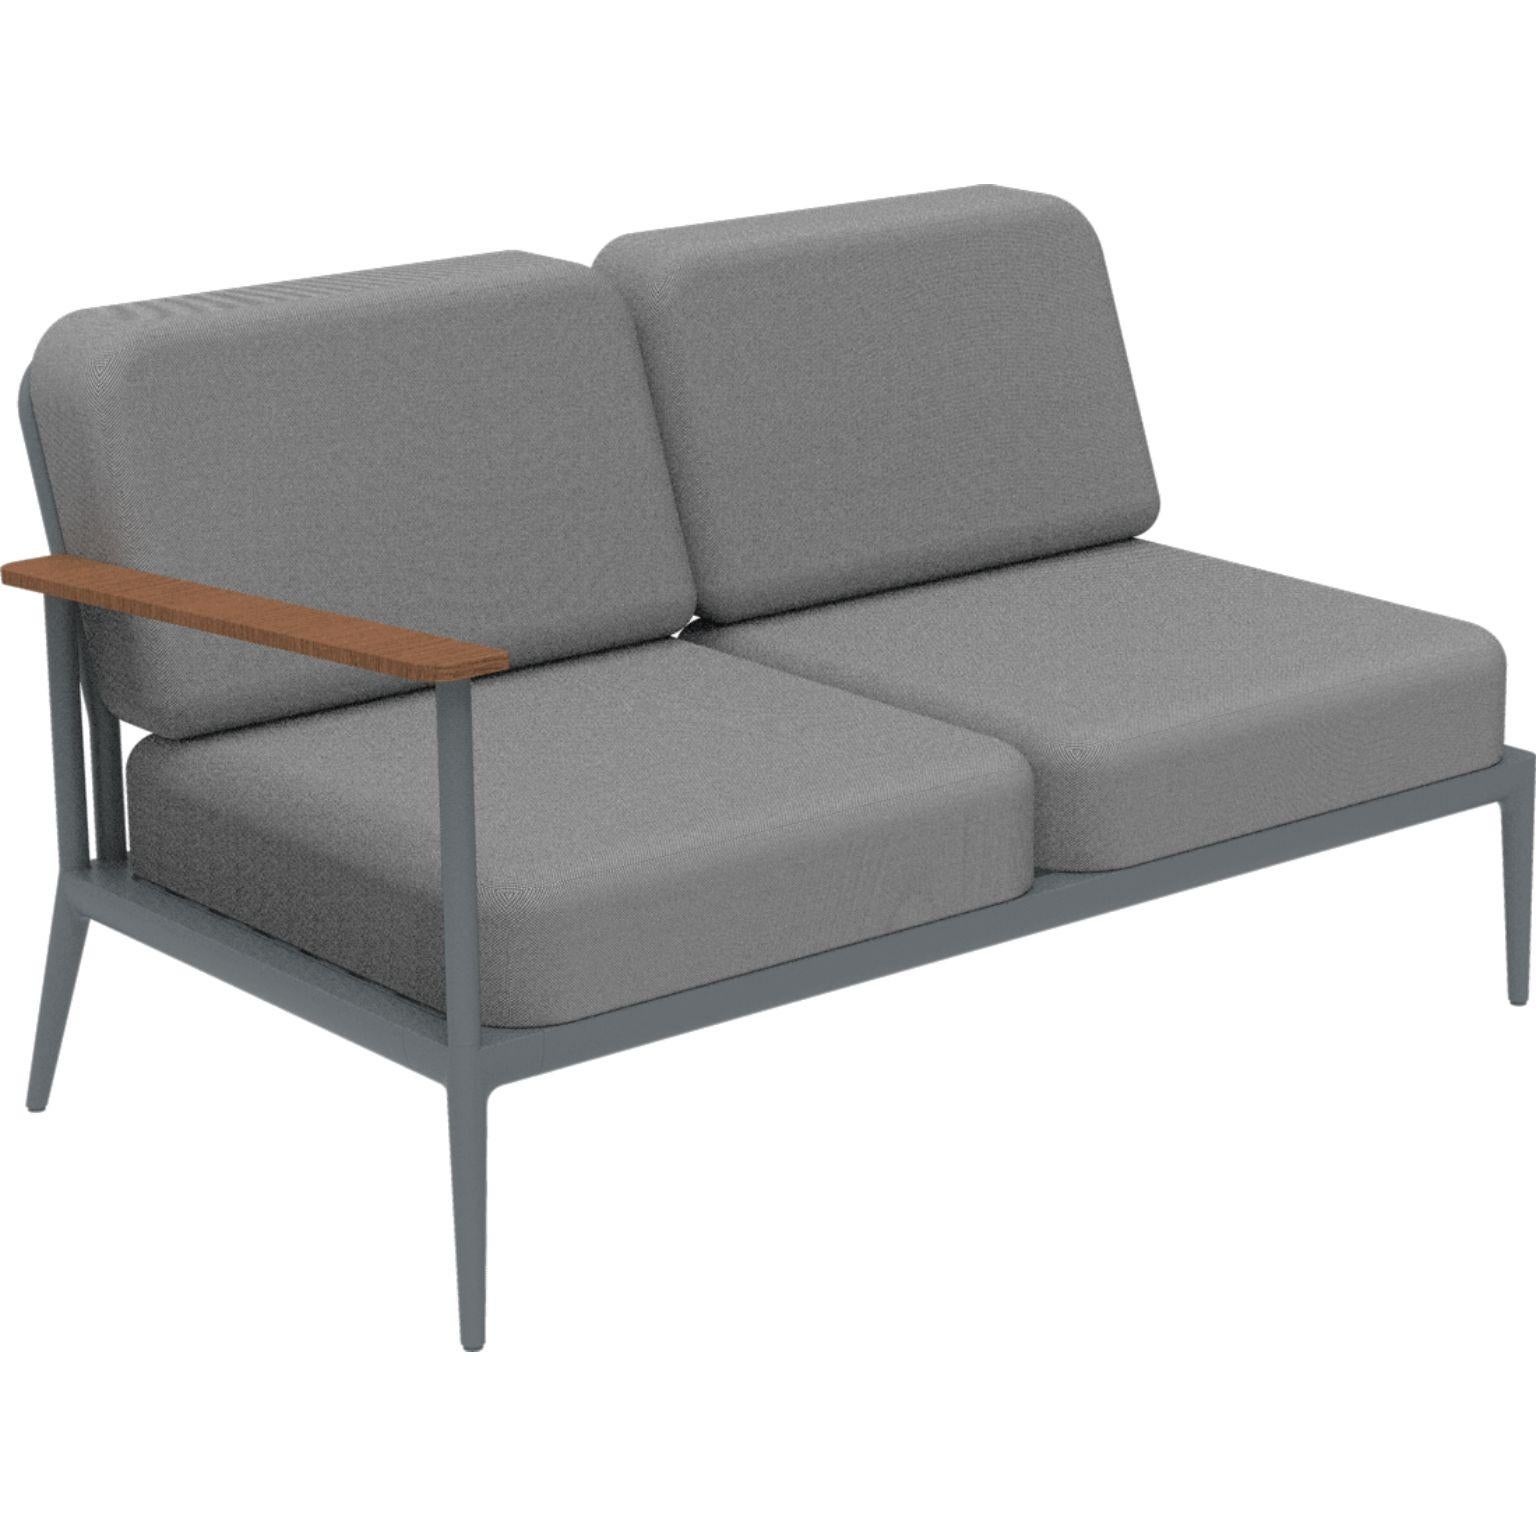 Modulares sofa Nature Grey Double Right von MOWEE
Abmessungen: T85 x B144 x H81 cm (Sitzhöhe 42 cm).
MATERIAL: Aluminium, Polsterung und Iroko-Holz.
Gewicht: 29 kg.
Auch in verschiedenen Farben und Ausführungen erhältlich. 

Eine Collection'S, die